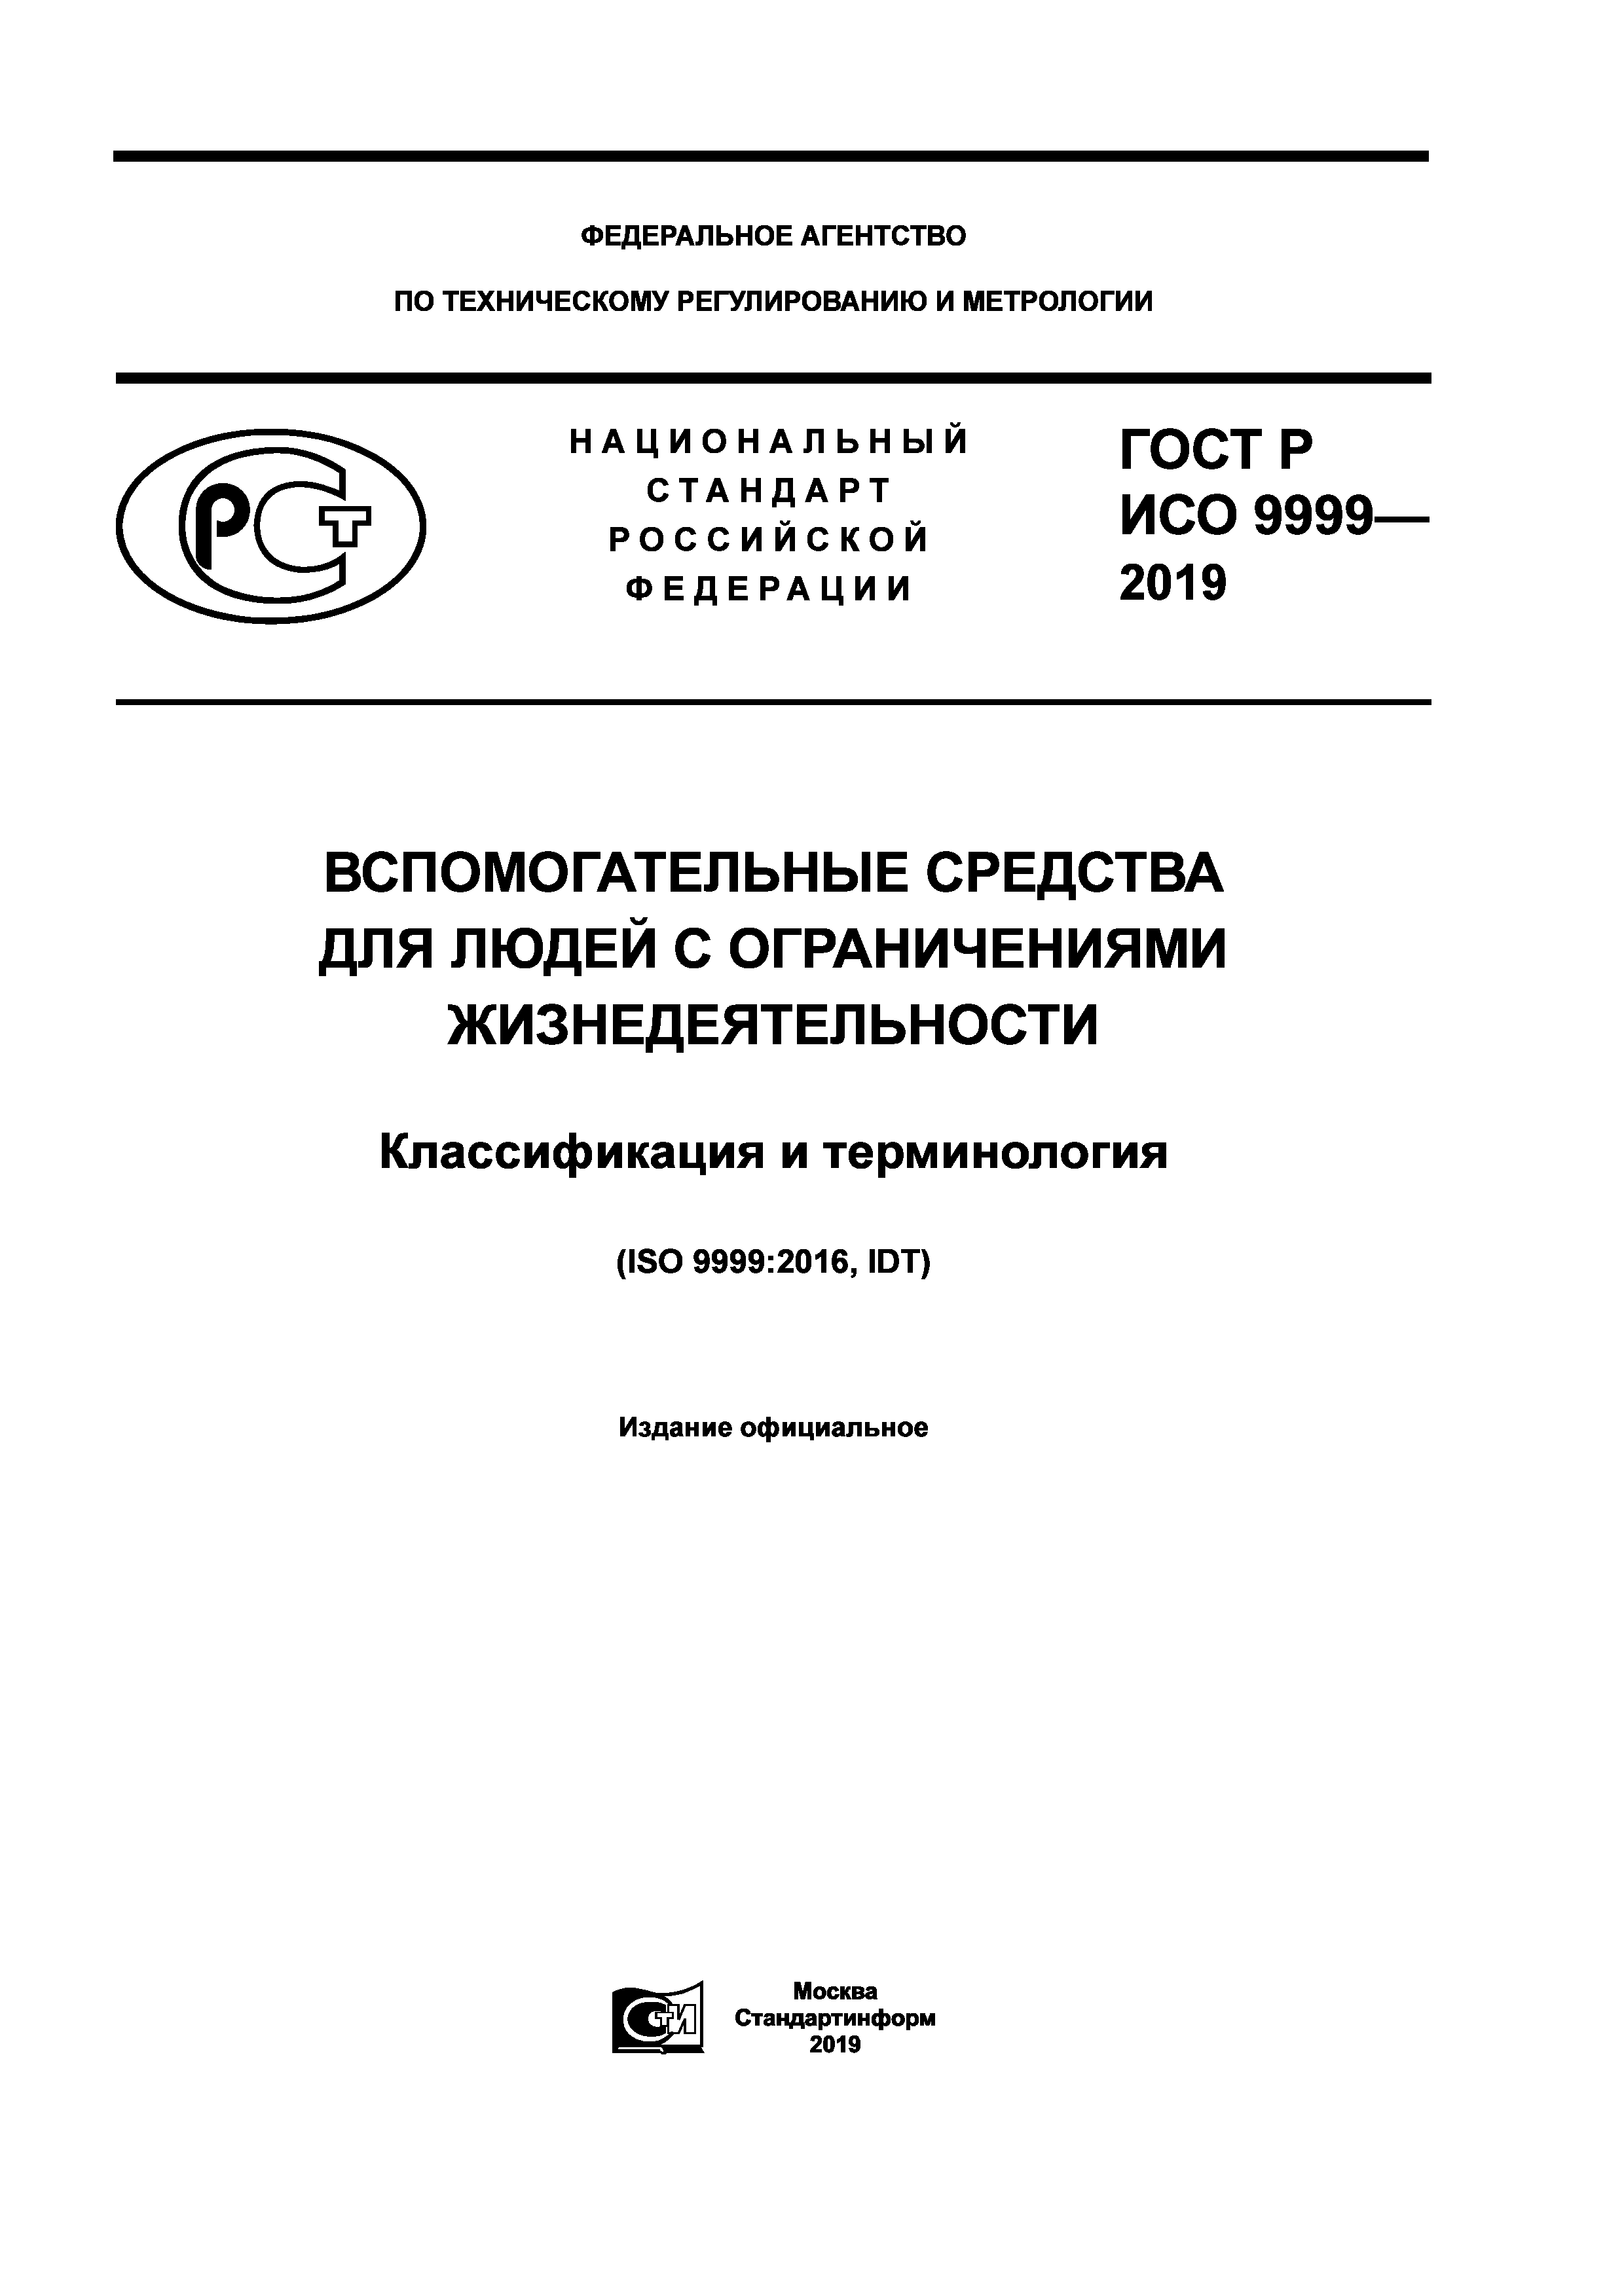 ГОСТ Р ИСО 9999-2019